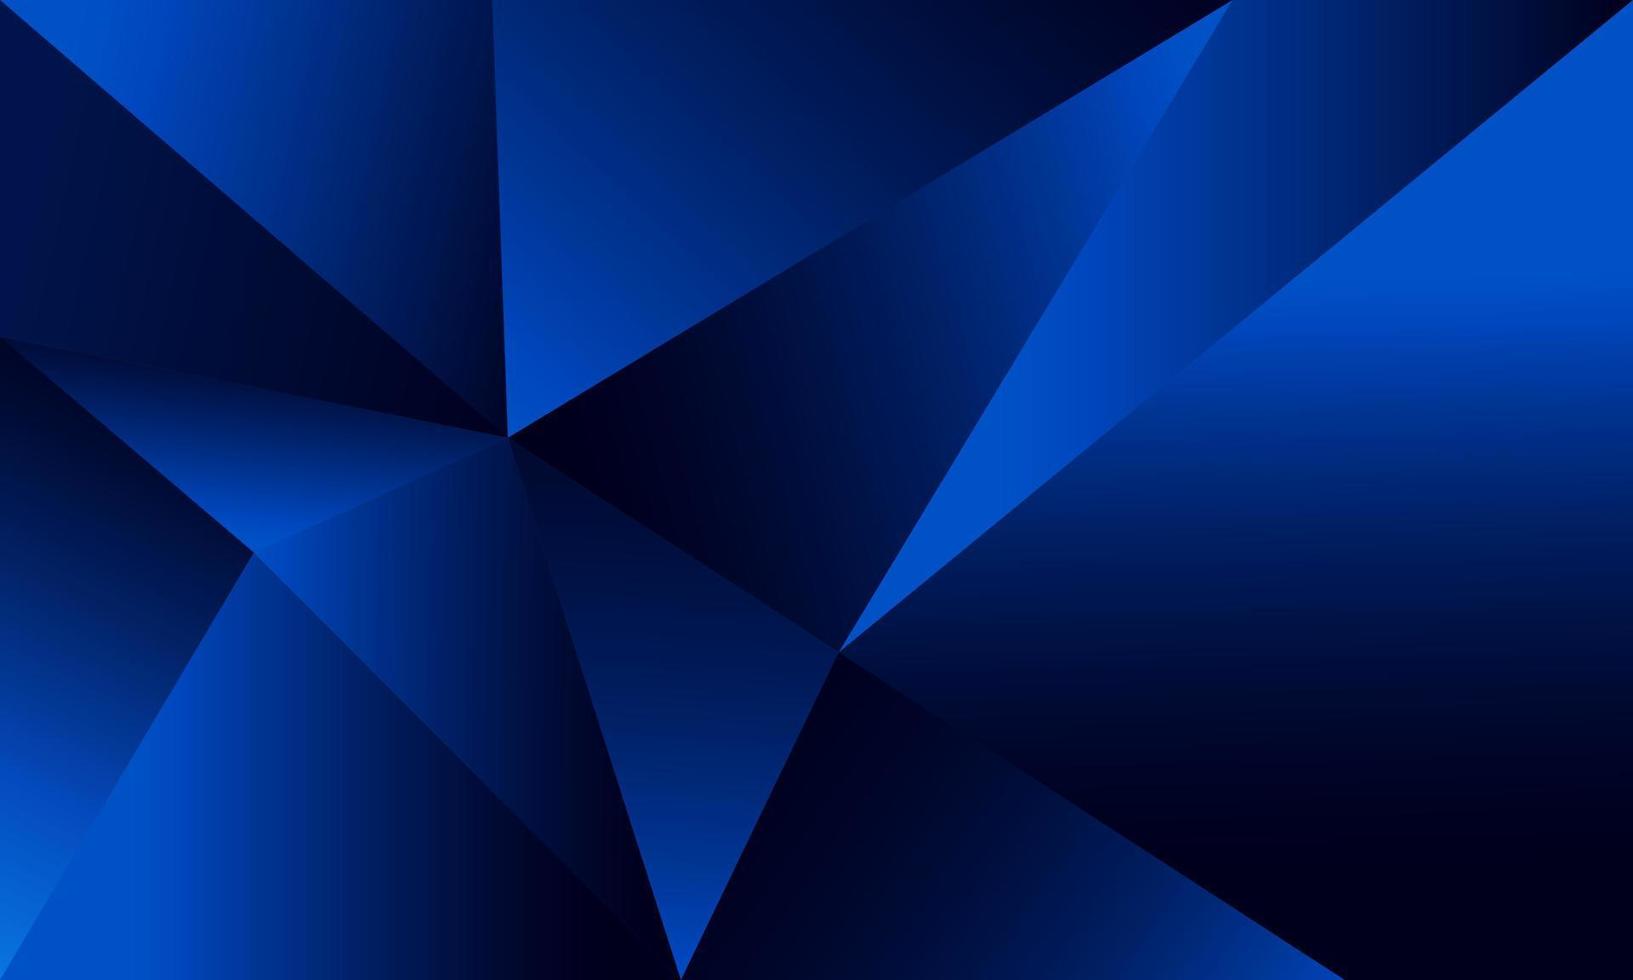 abstracte blauwe veelhoek driehoeken vorm patroon achtergrond met verlichting effect luxe stijl. illustratie vector digitale technologie ontwerpconcept.